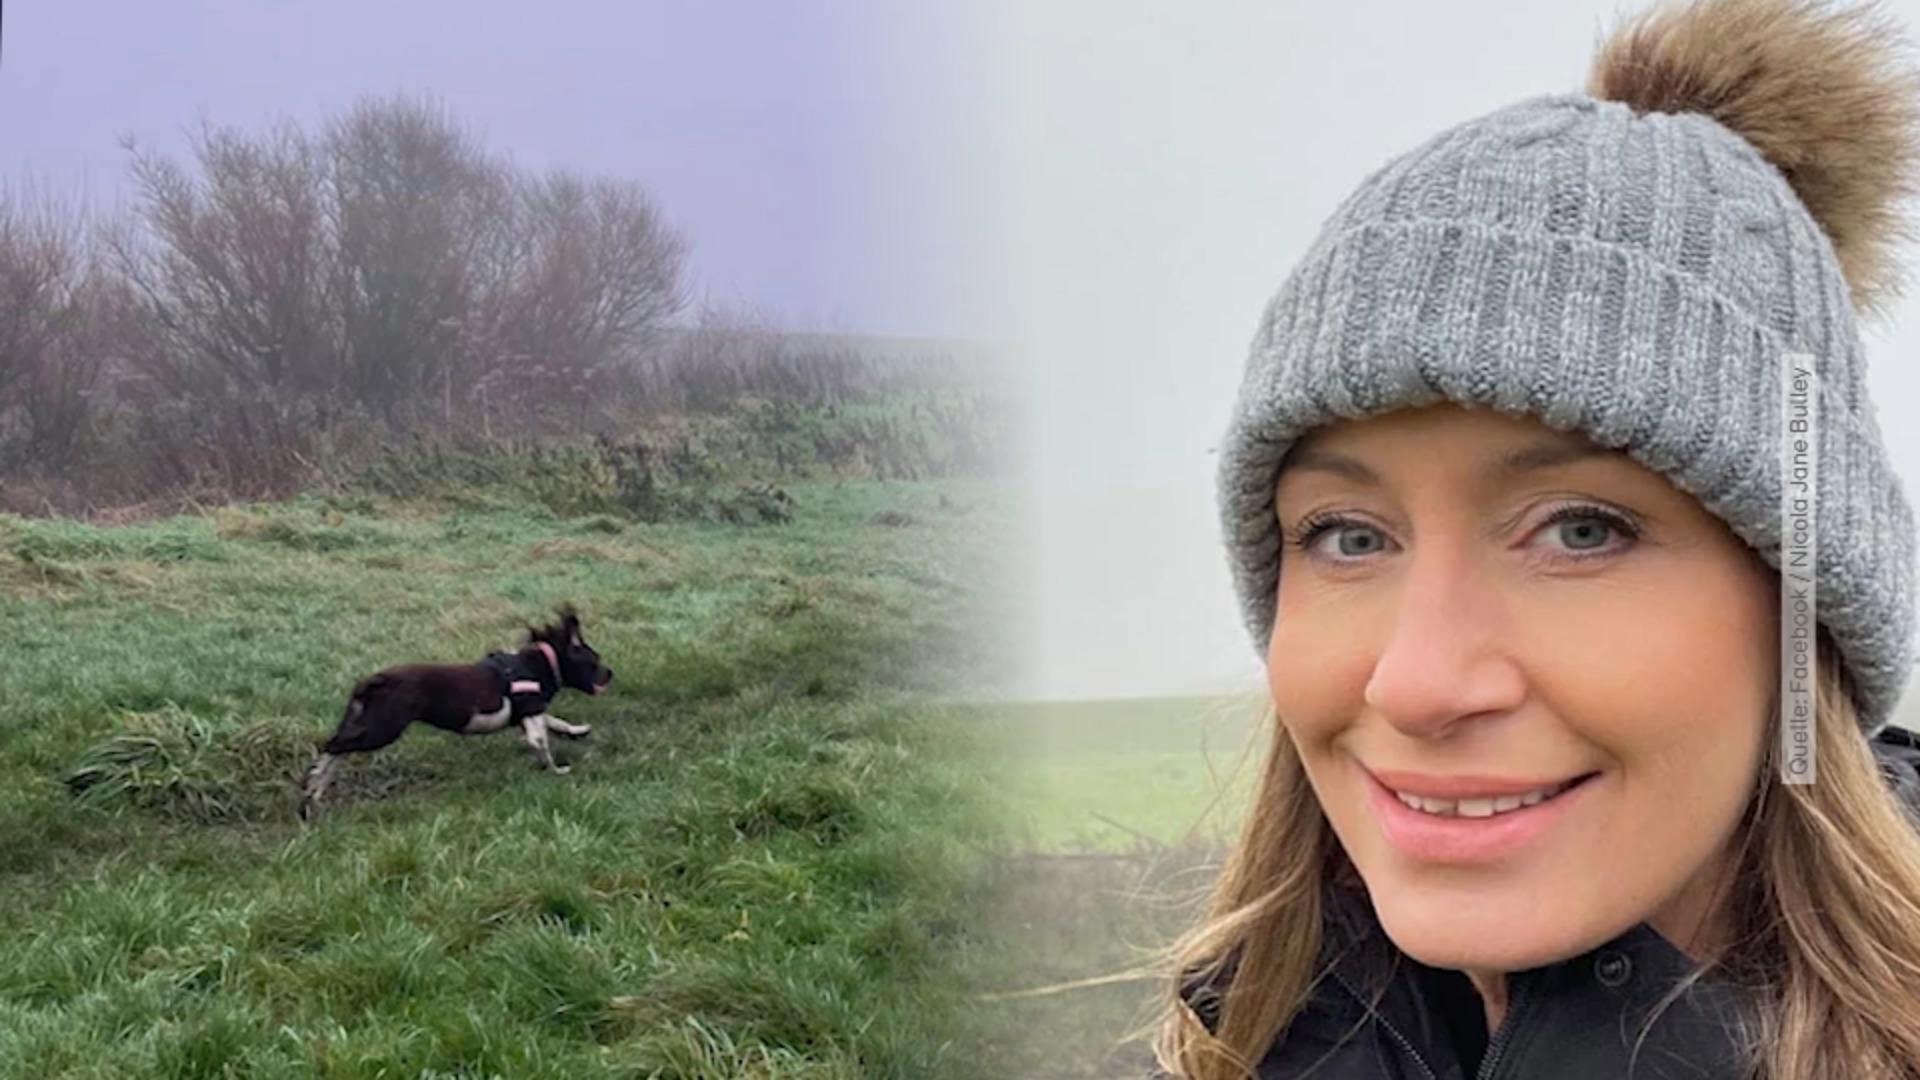 Zweifach-Mama verschwindet beim Gassigehen mit dem Hund Suche nach vermisster Nicola Bulley